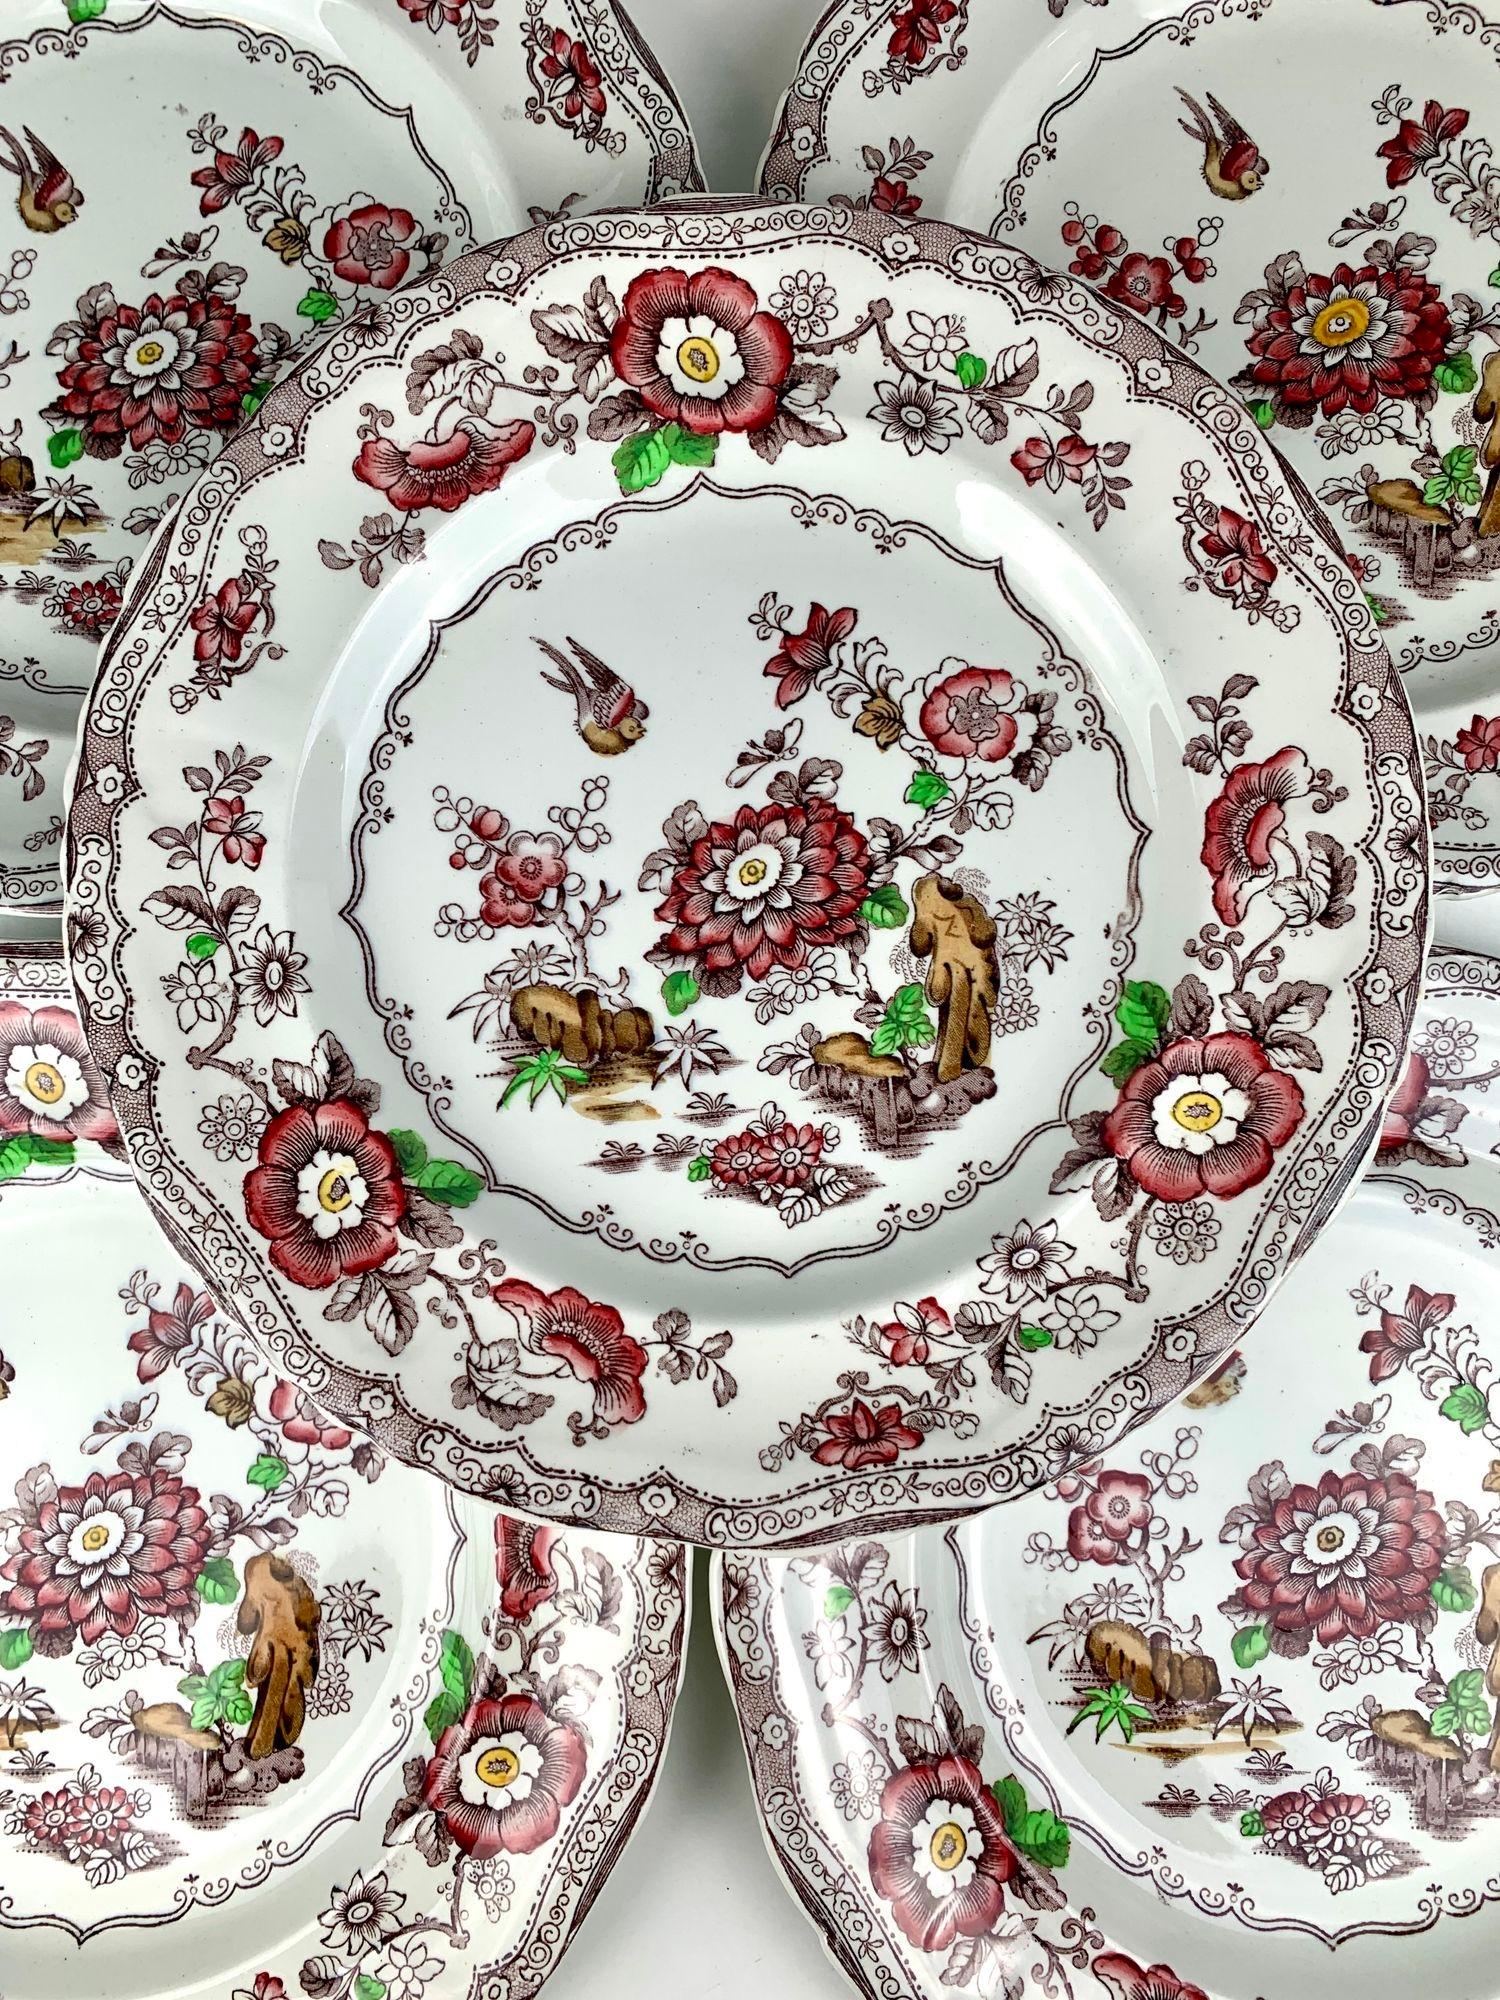 Cet ensemble d'une douzaine d'assiettes à dîner victoriennes a été fabriqué dans le Staffordshire, en Angleterre, vers 1870.
Les assiettes sont belles et grandes, mesurant 10